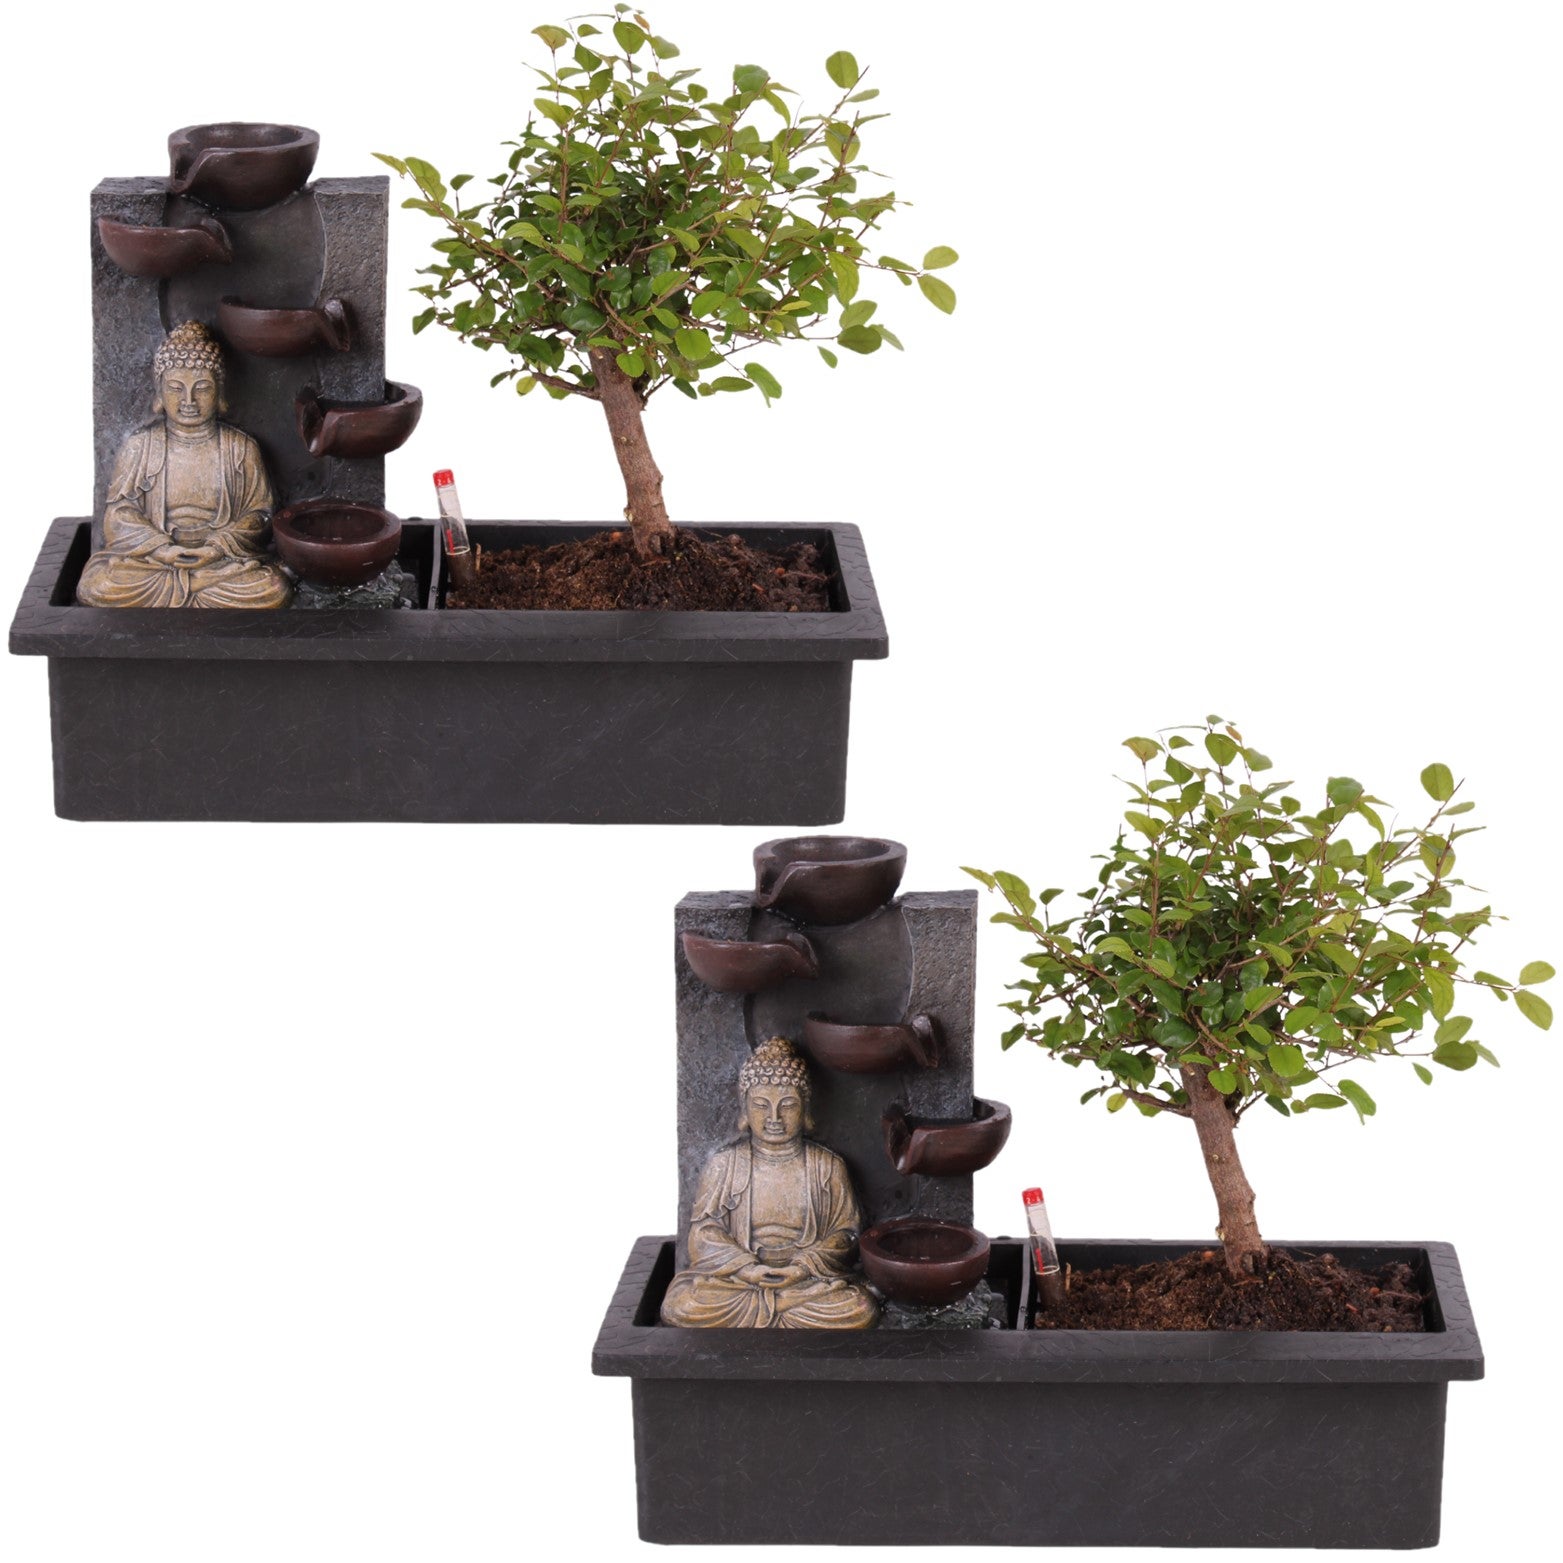 Plant in a Box - Bonsai con sistema idrico di facile manutenzione